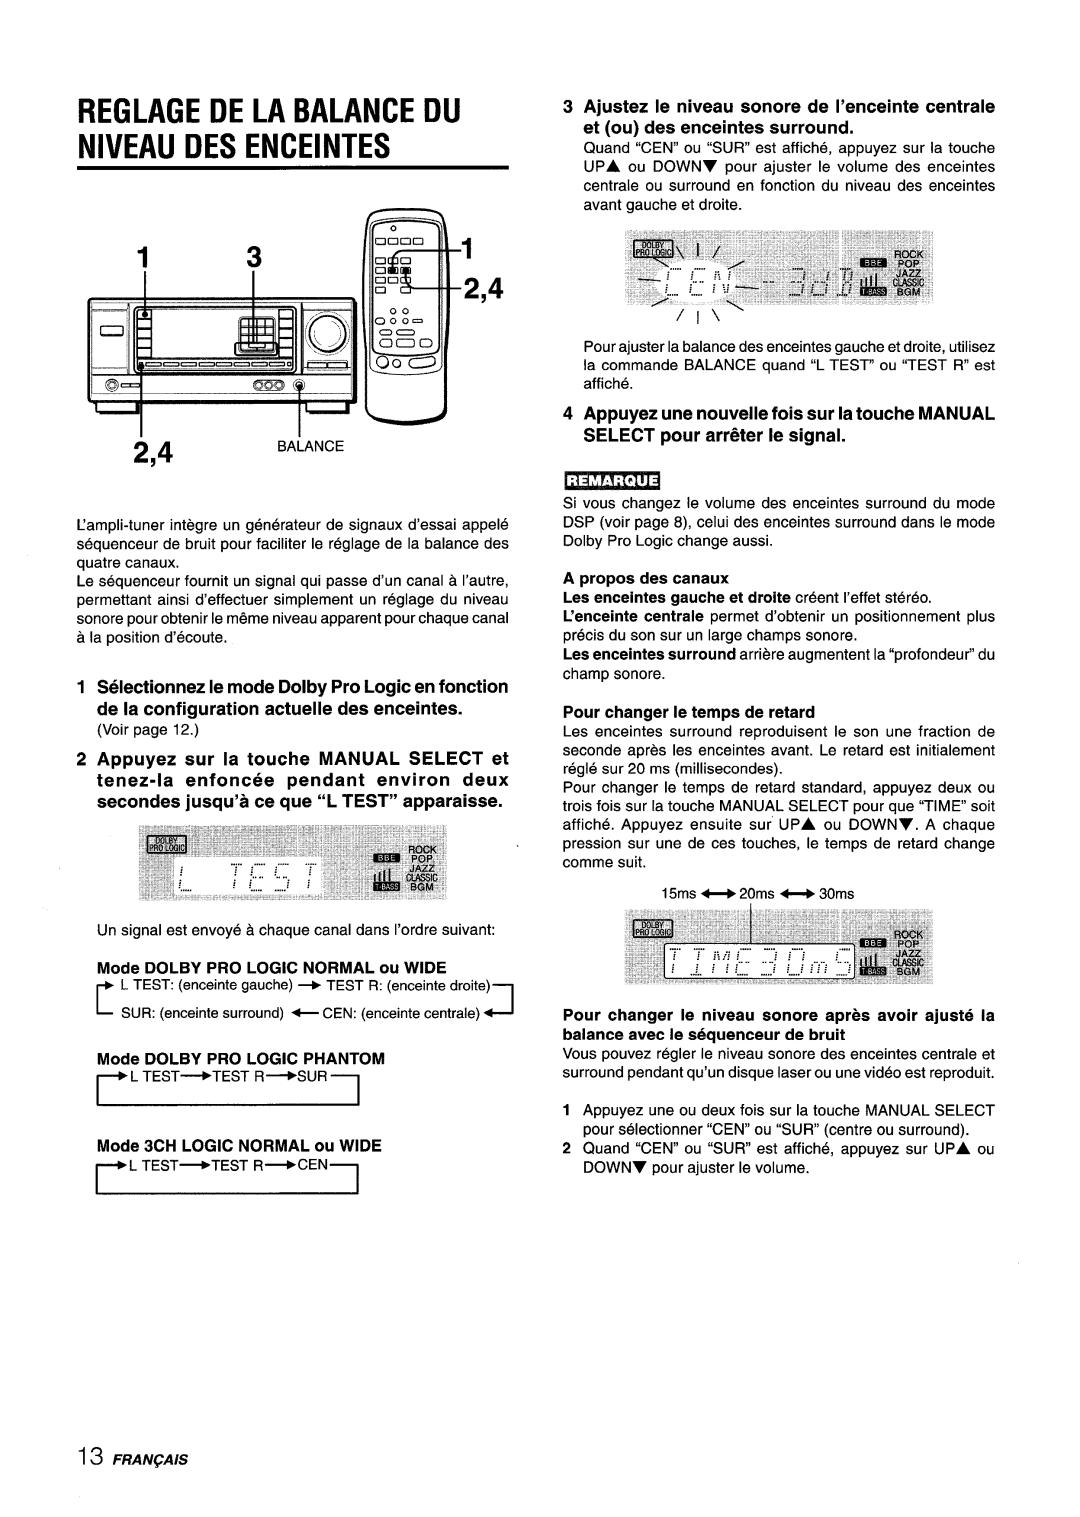 Aiwa AV-X220 manual Reglage De La Balance Du Niveau Des Enceintes, Appuyez sur la touche MANUAL SELECT et 